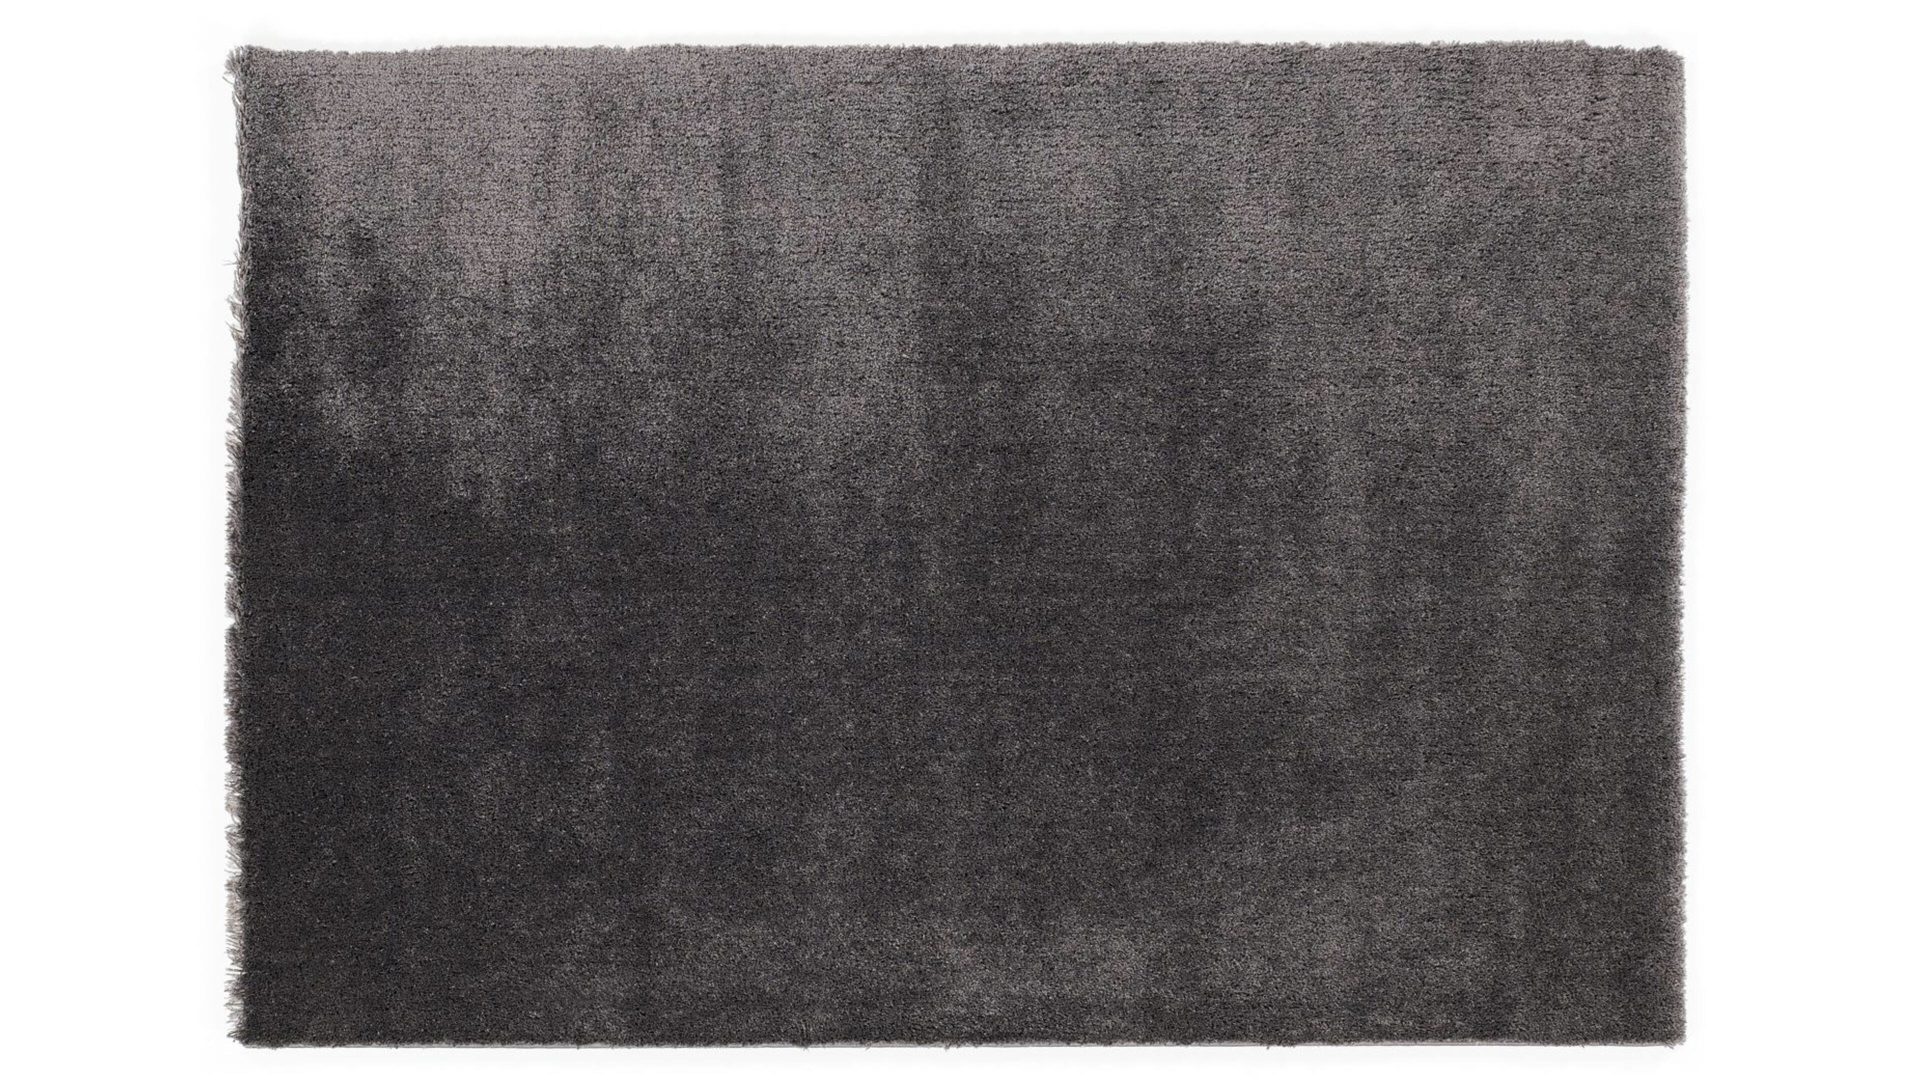 Shaggyteppich Oci aus Kunstfaser in Schwarz Shaggyteppich Royal Shaggy für Ihre Wohnaccessoires quarzfarbene Kunstfaser – ca. 200 x 290 cm